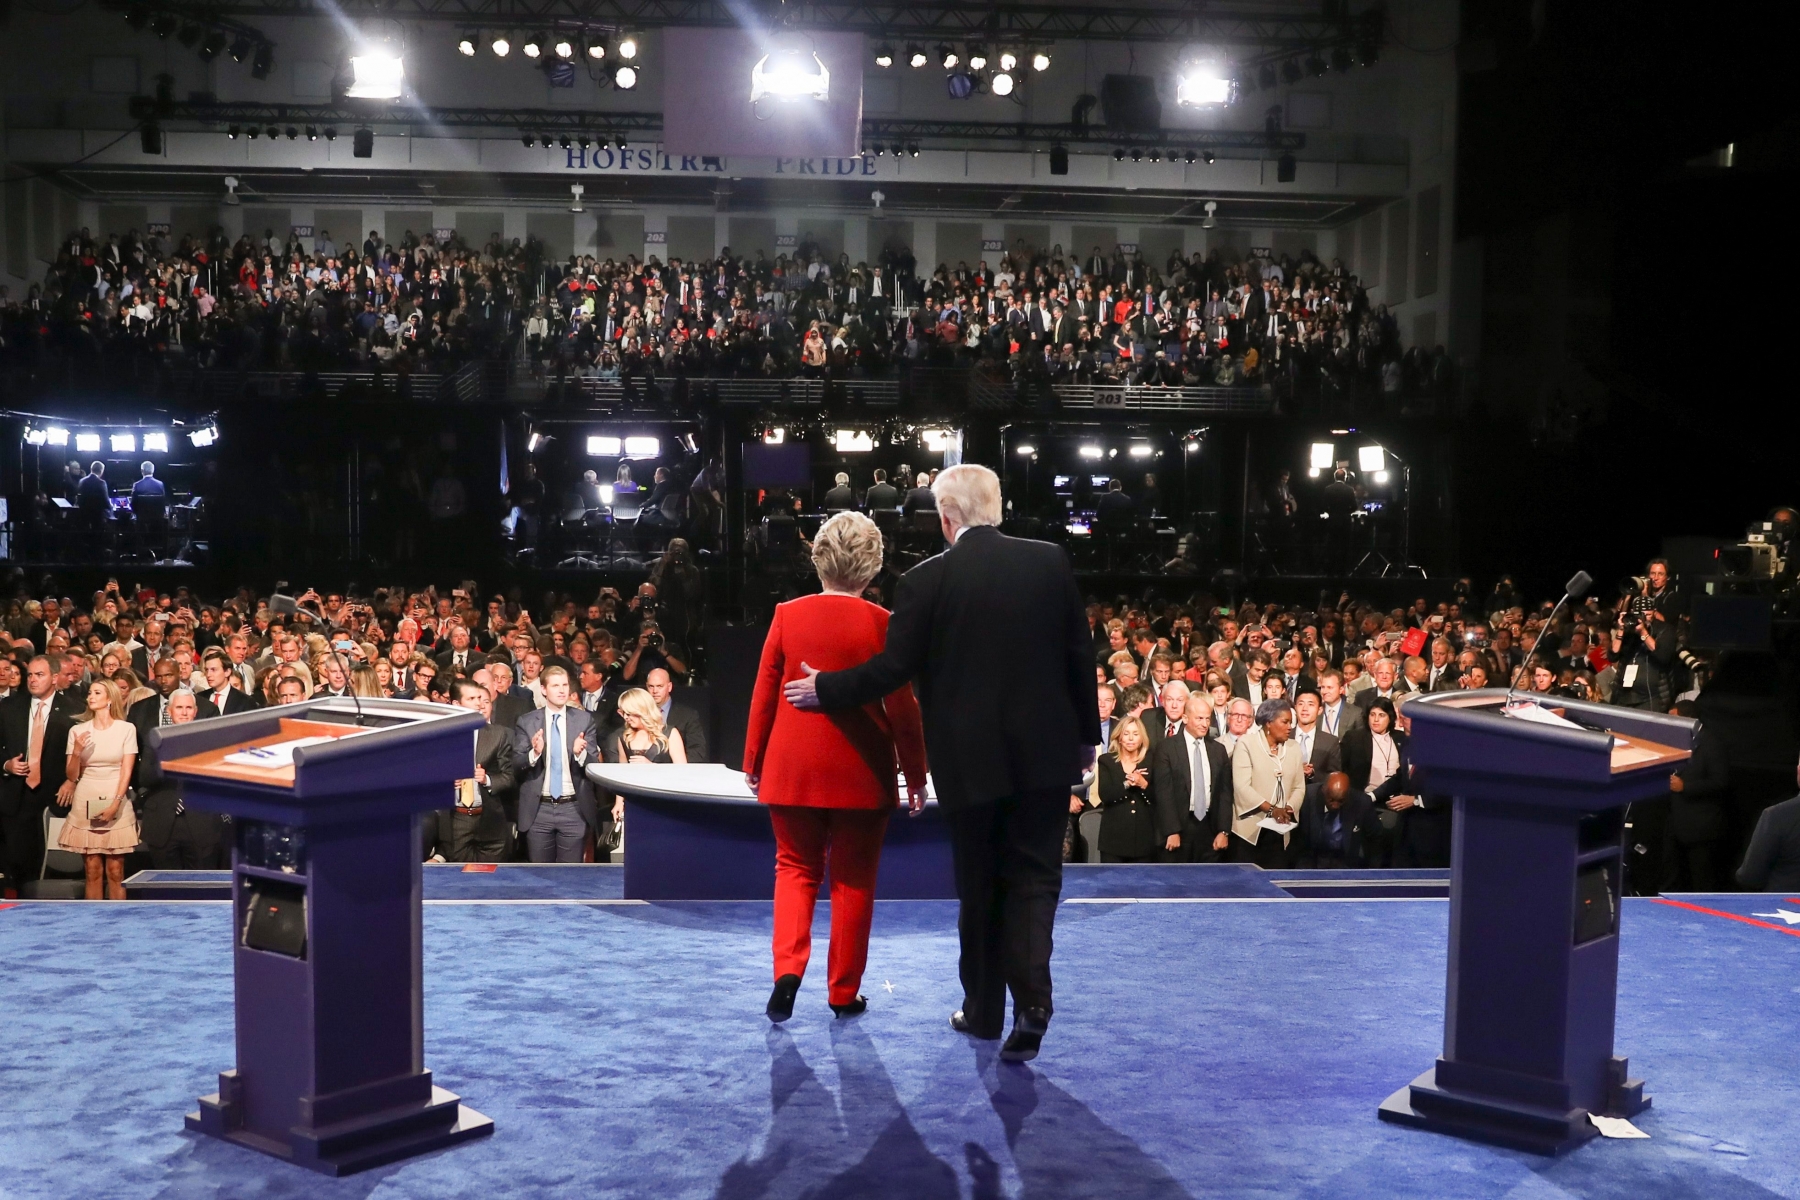 Le premier débat télévisé entre Hillary Clinton et Donald Trump a donné lieu à un affrontement tendu, voire musclé.